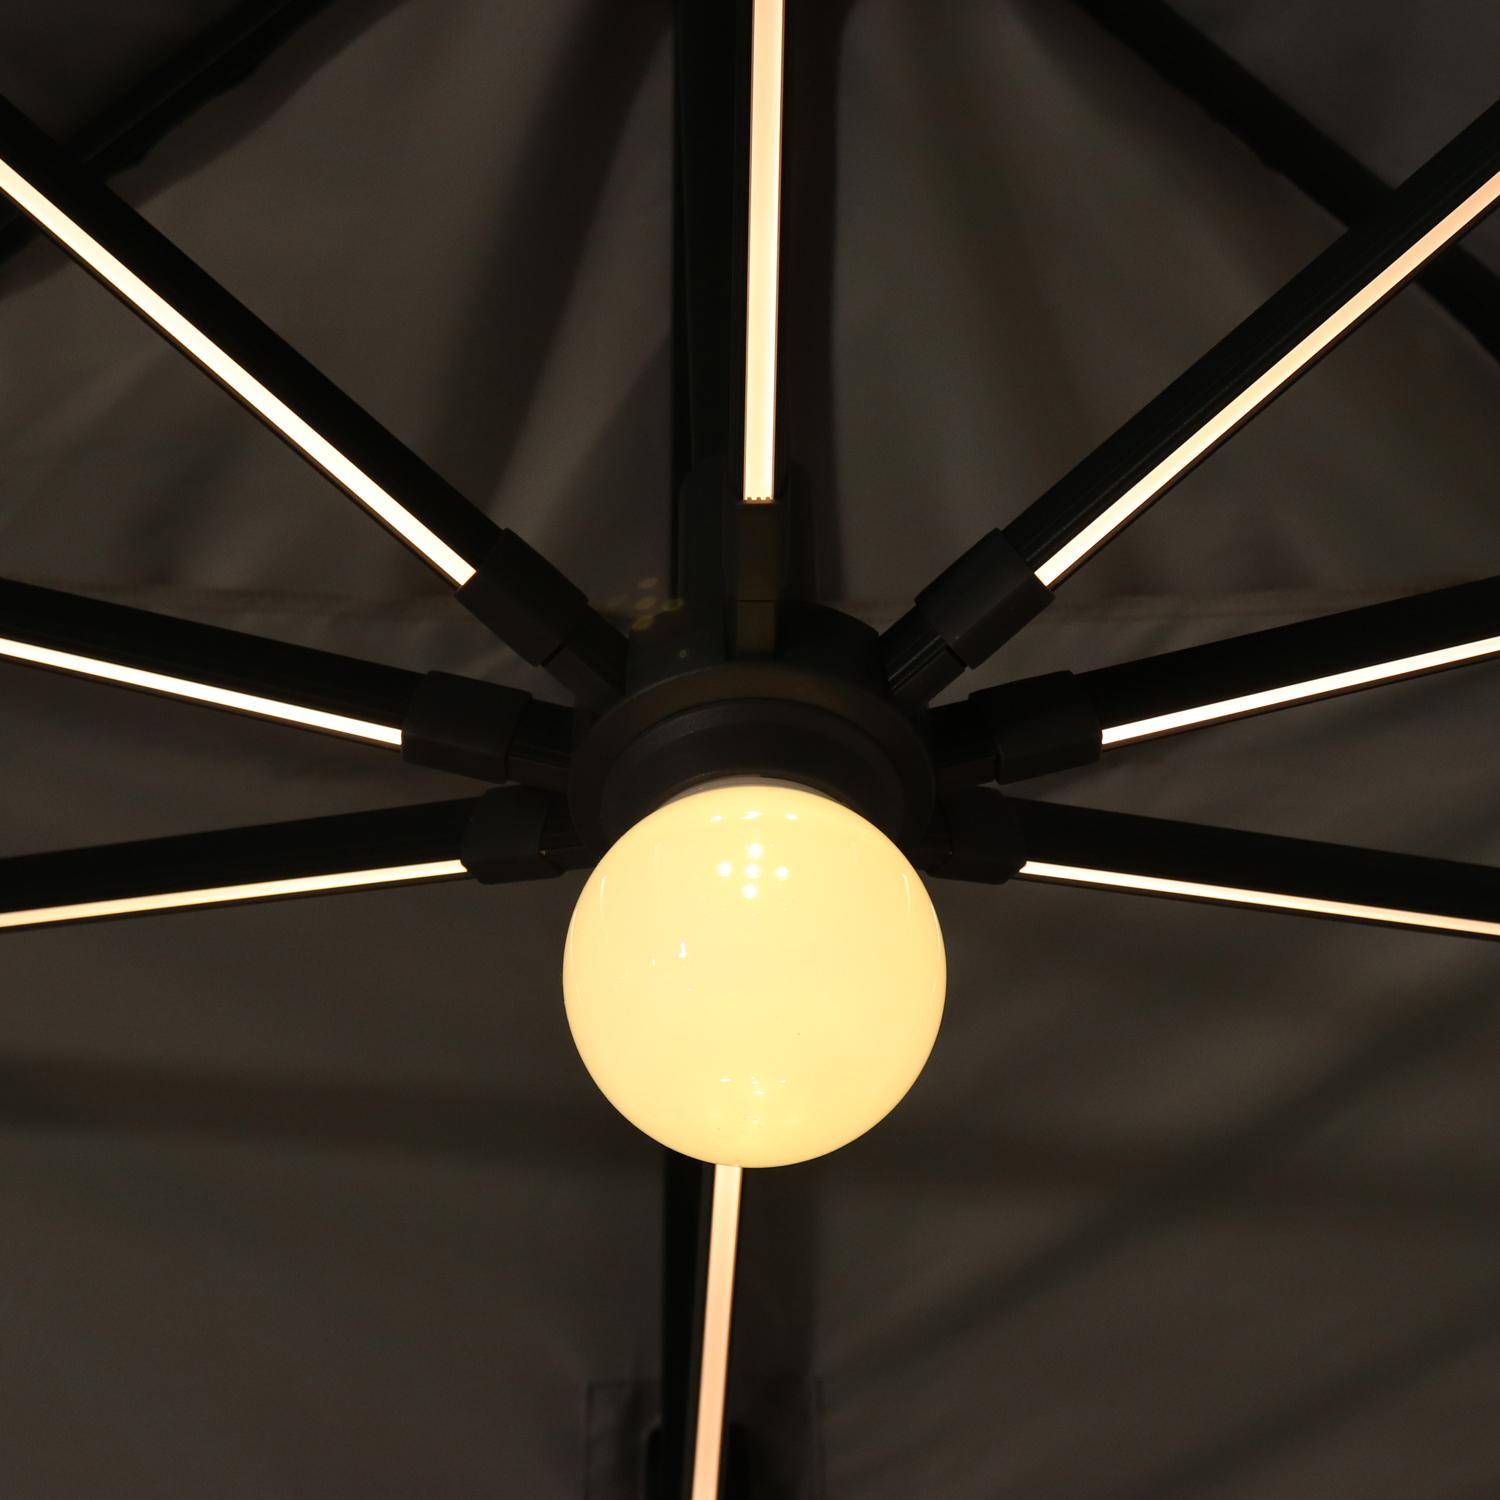 Chapéu-de-sol, guarda-sol, excêntrico, retangular, LED, antracite e cinzento-claro, 3x4 m, base giratória - Luce Photo3